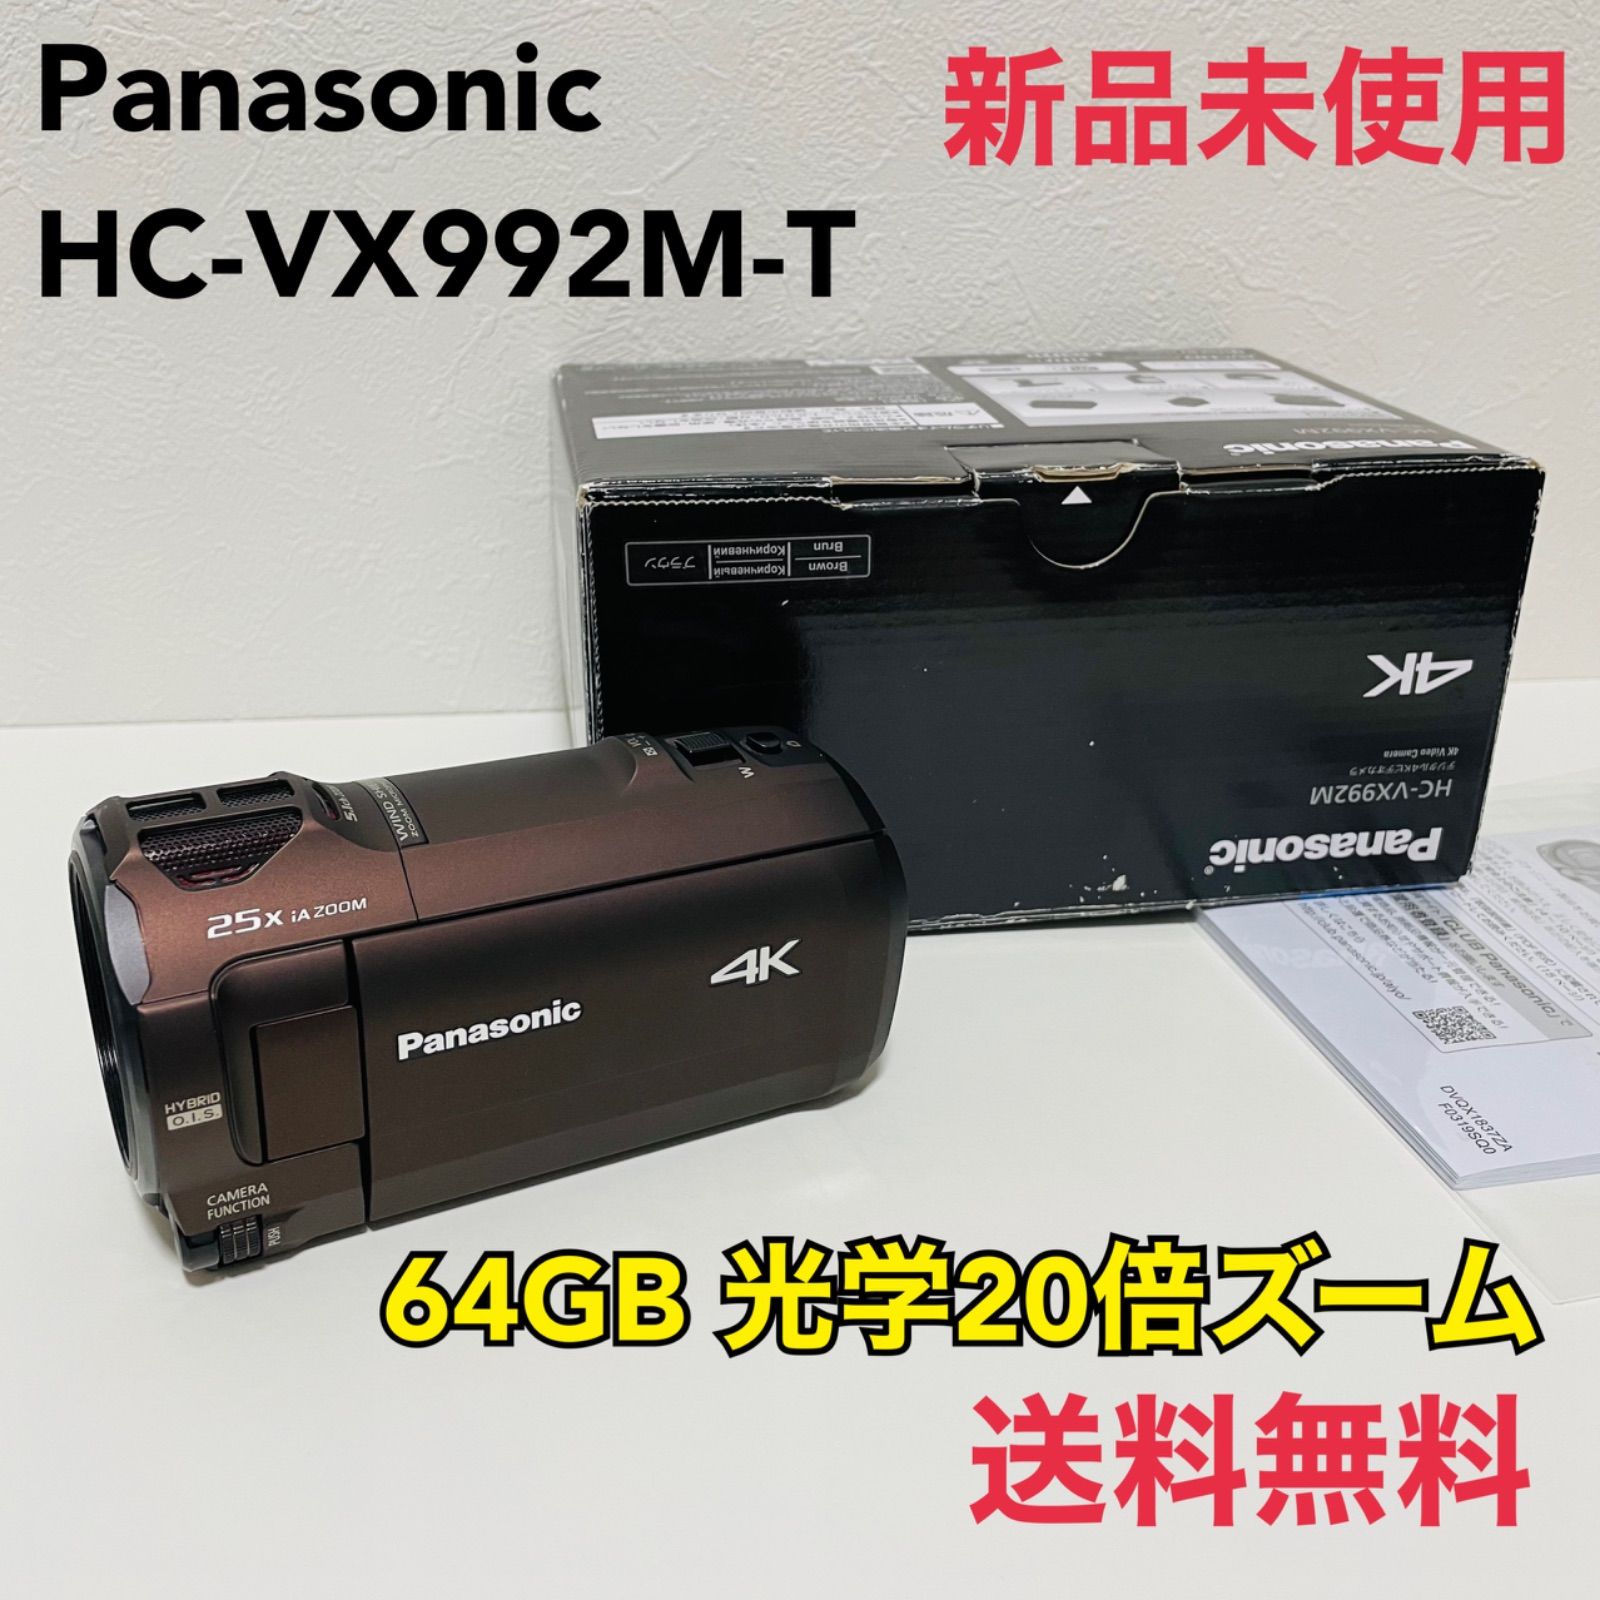 パナソニック 4K ビデオカメラ VX992M 64GB 光学20倍ズーム カカオブラウン